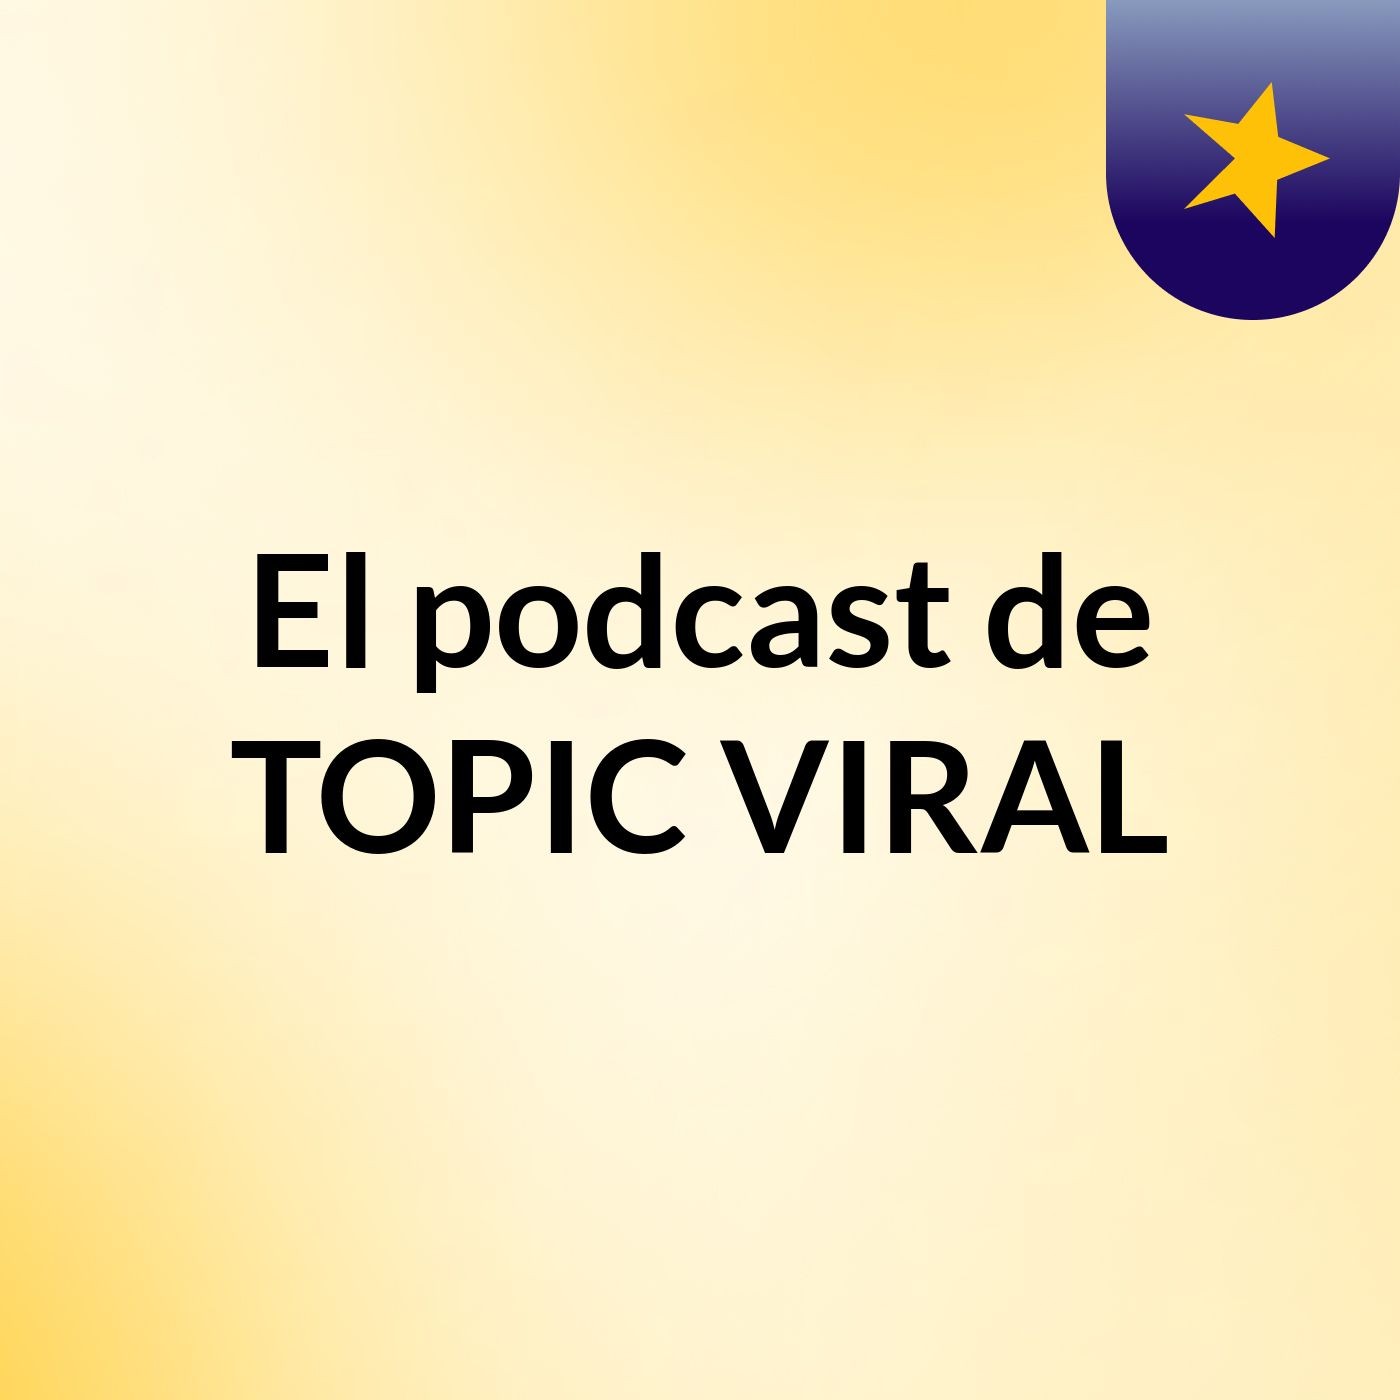 El podcast de TOPIC VIRAL